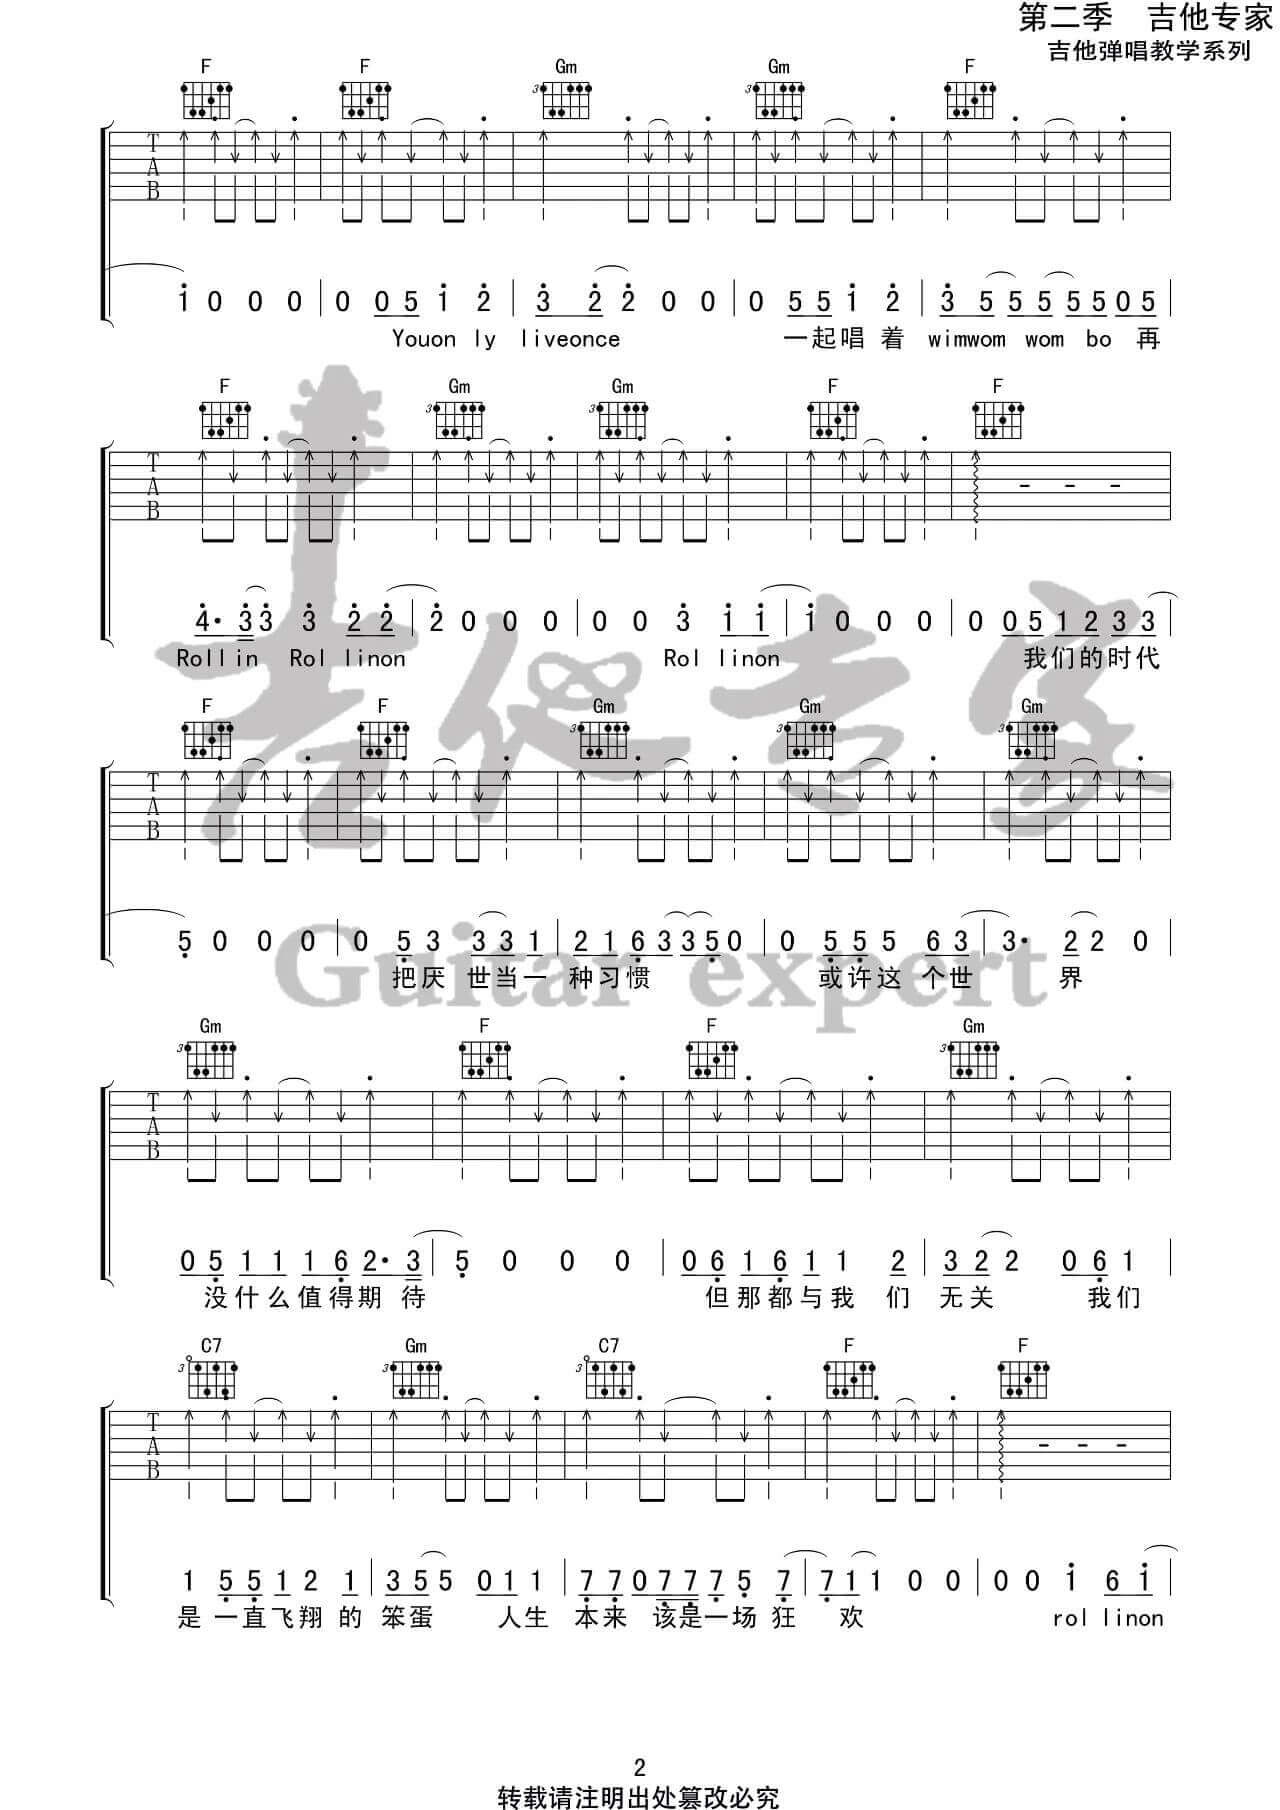 吉他源-Rollin’ On吉他谱-椅子乐团-原调F调版吉他谱插图1